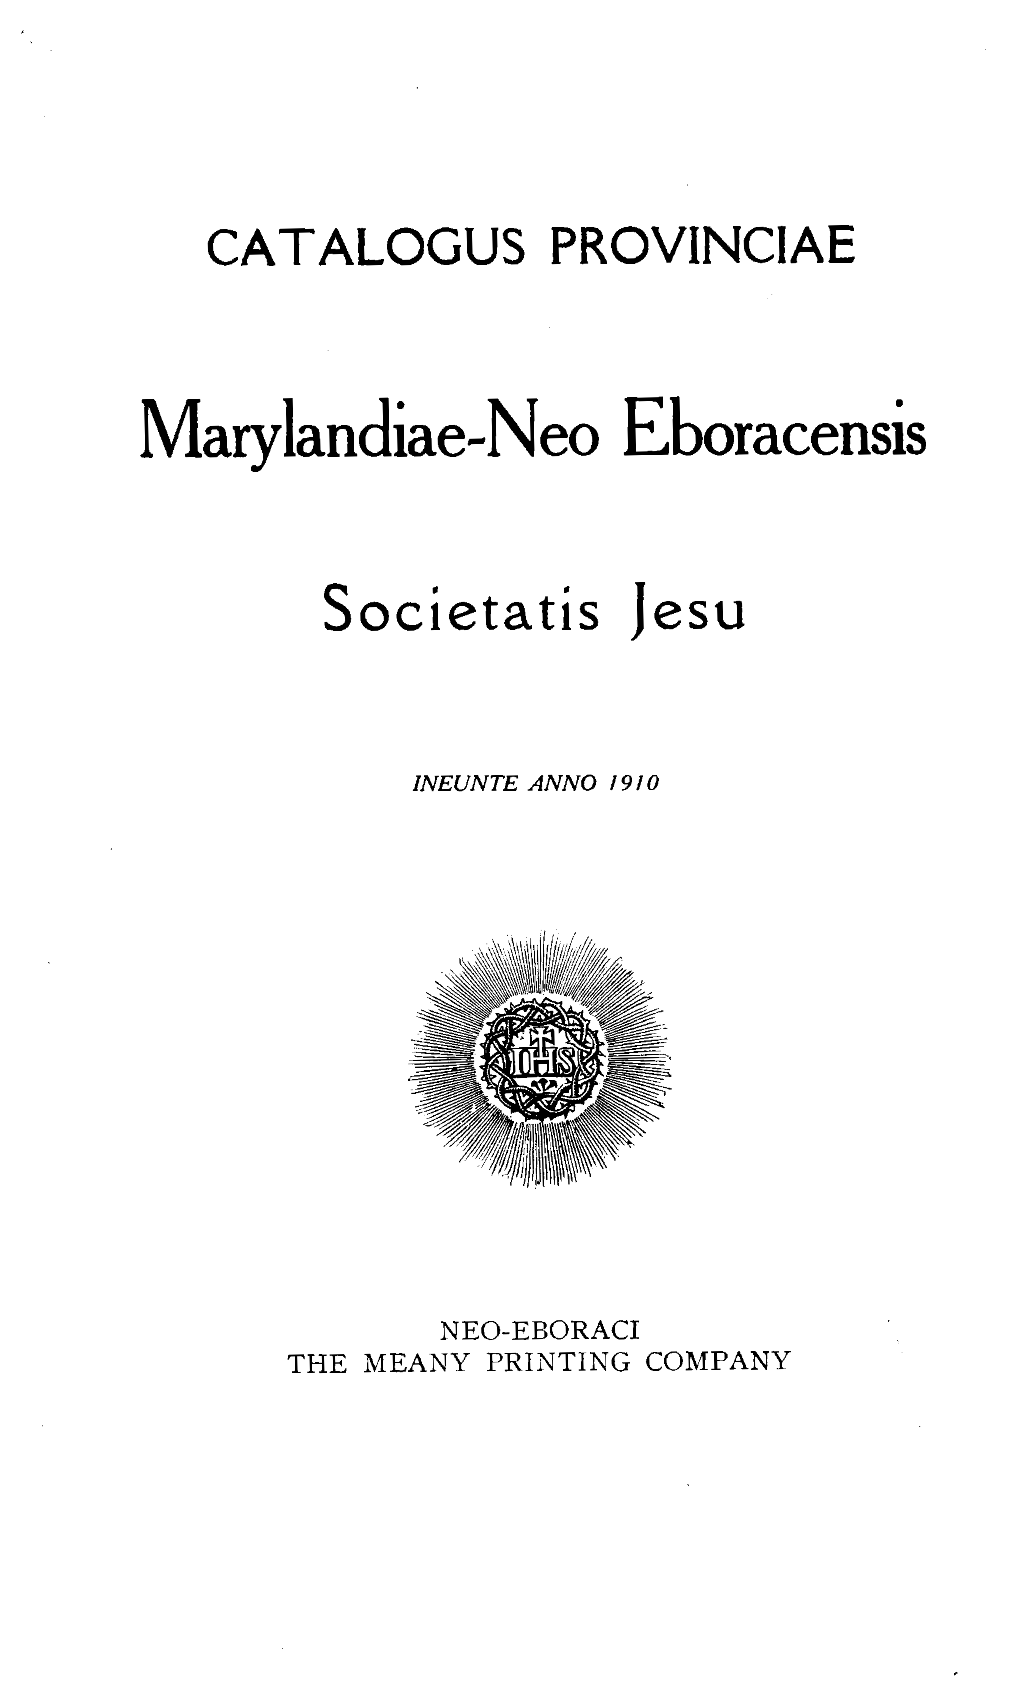 Marylandiae-Neo Eboracensis